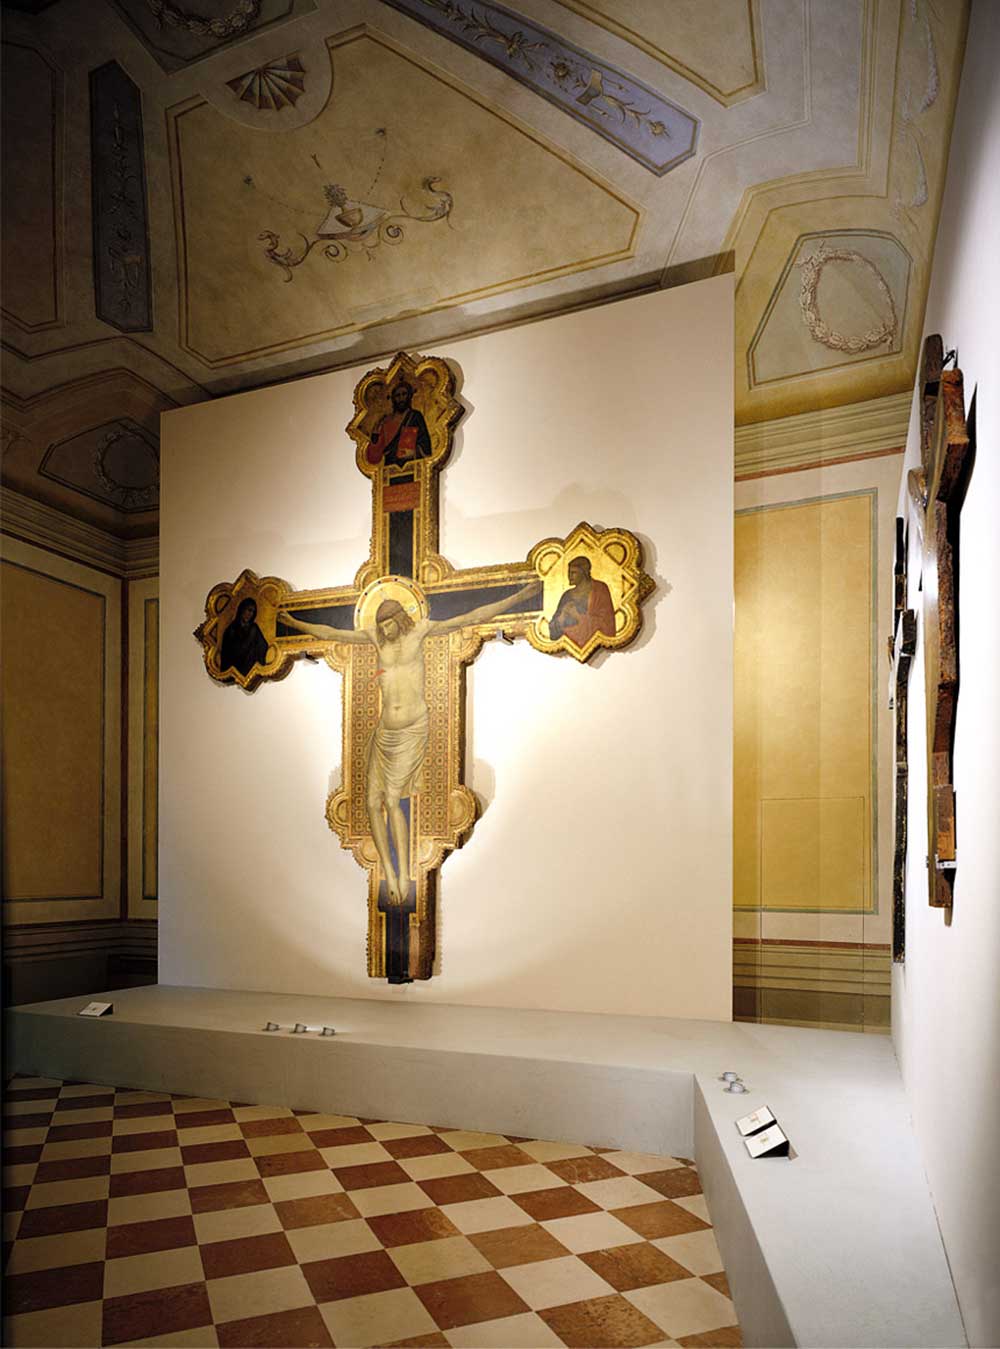 Progetto illuminazione mostra "Giotto e il suo tempo", Firenze